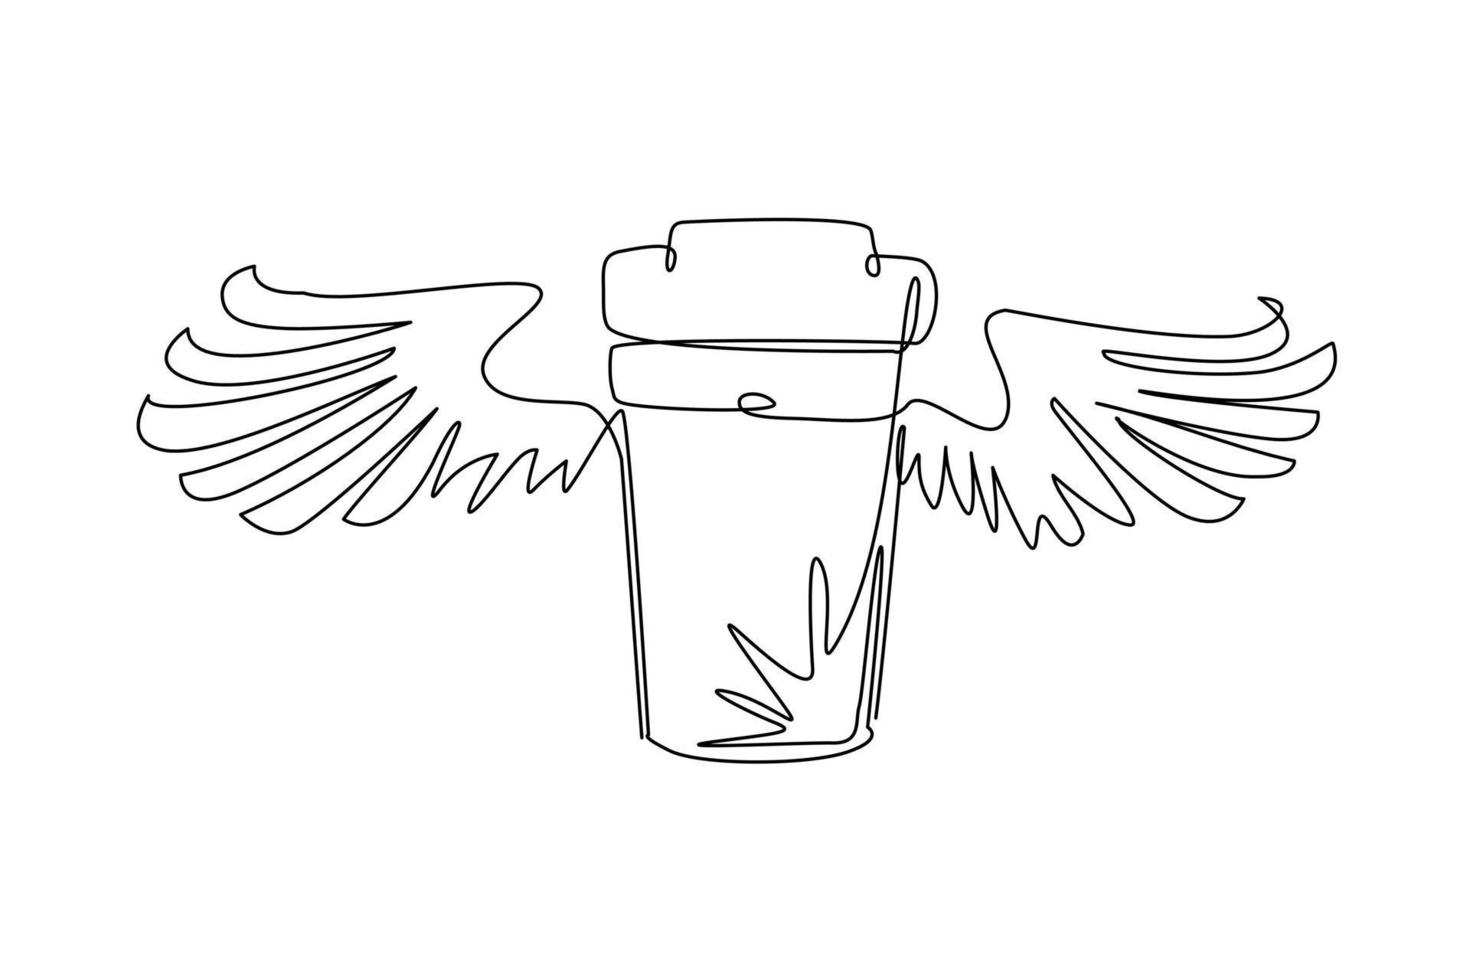 una sola línea continua de dibujo para llevar una taza de café voladora con alas. taza de café de cartón desechable. icono de contenedor de papel. comida rápida, programa de entrega de almuerzos. vector de diseño gráfico de dibujo de una línea